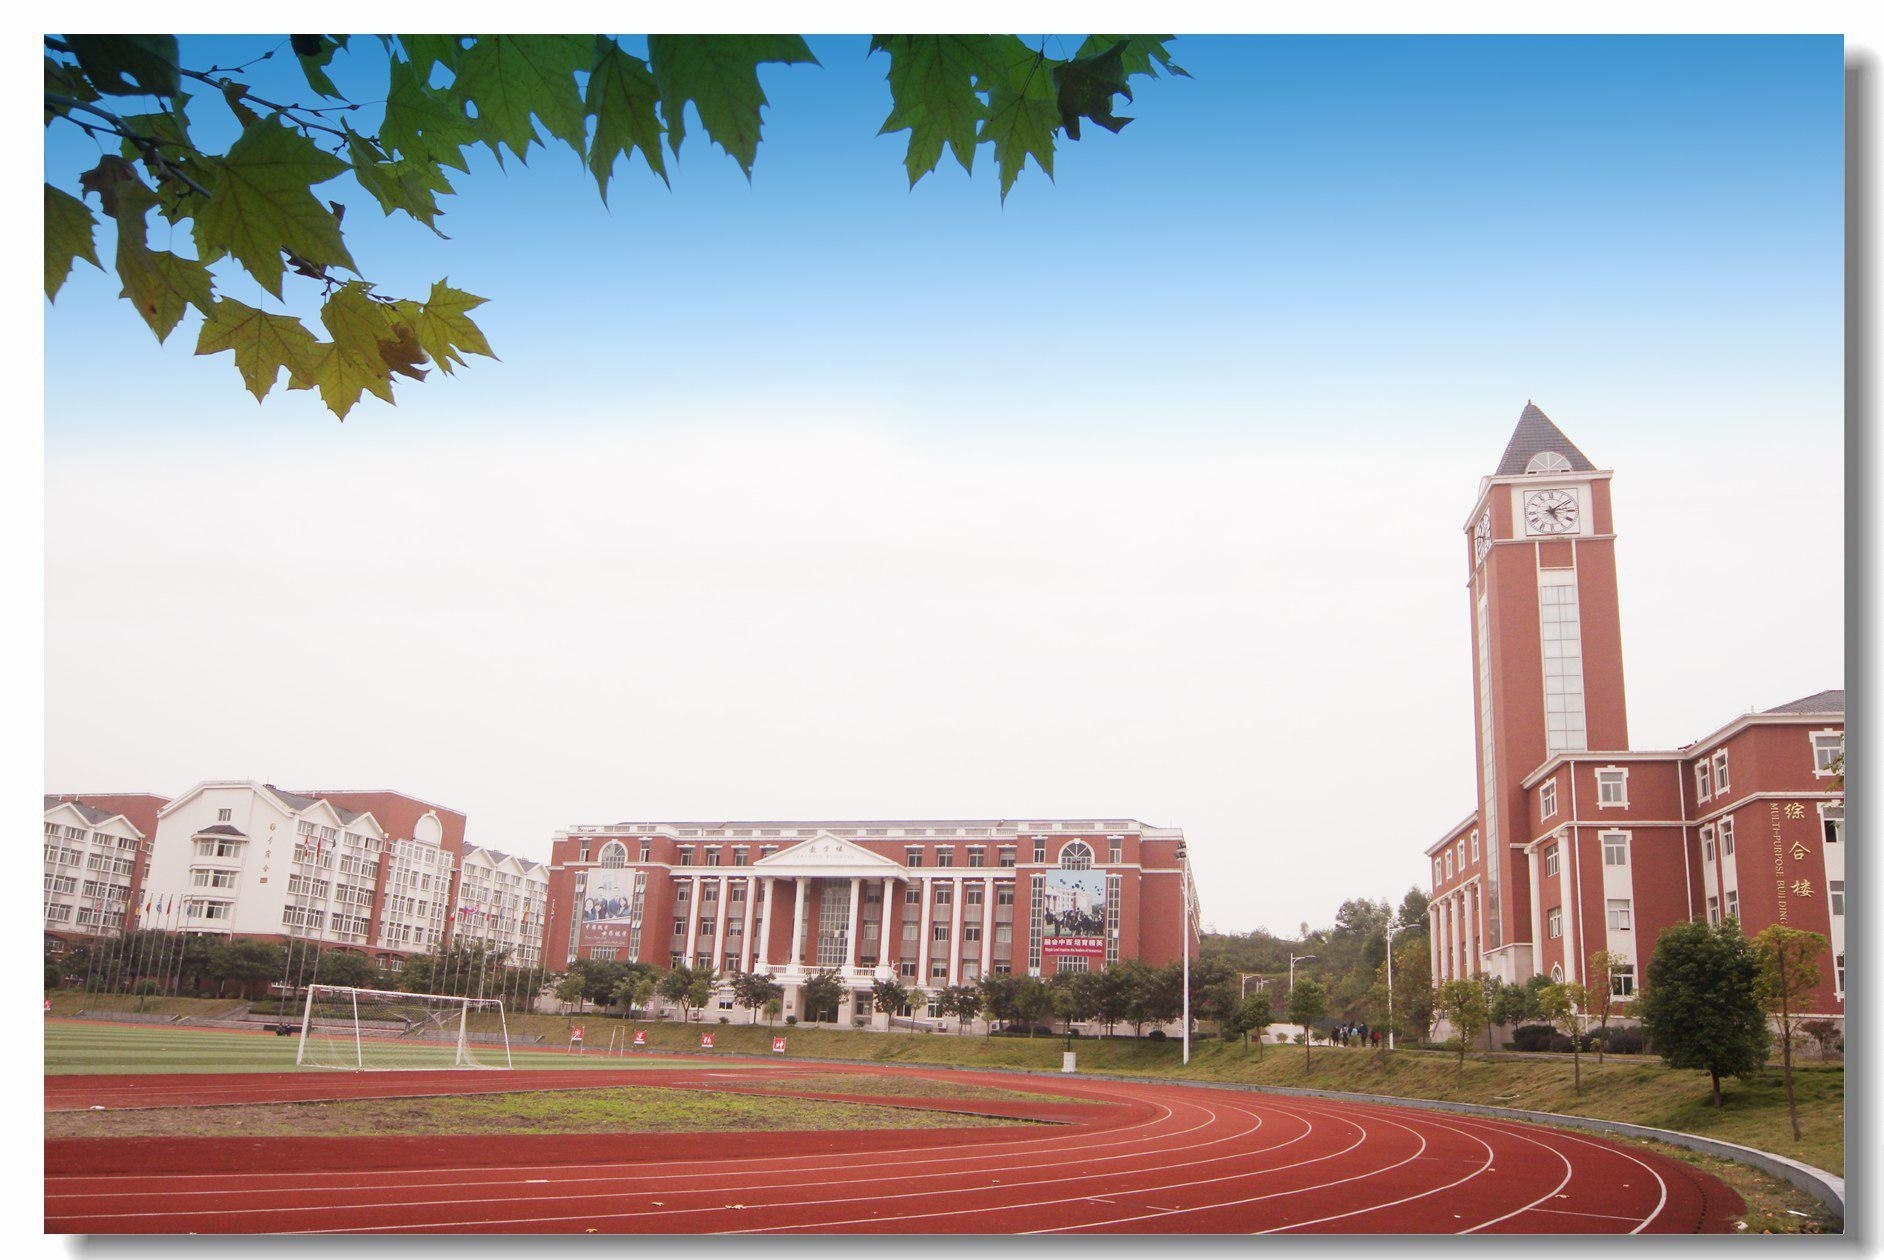 重庆枫叶国际学校